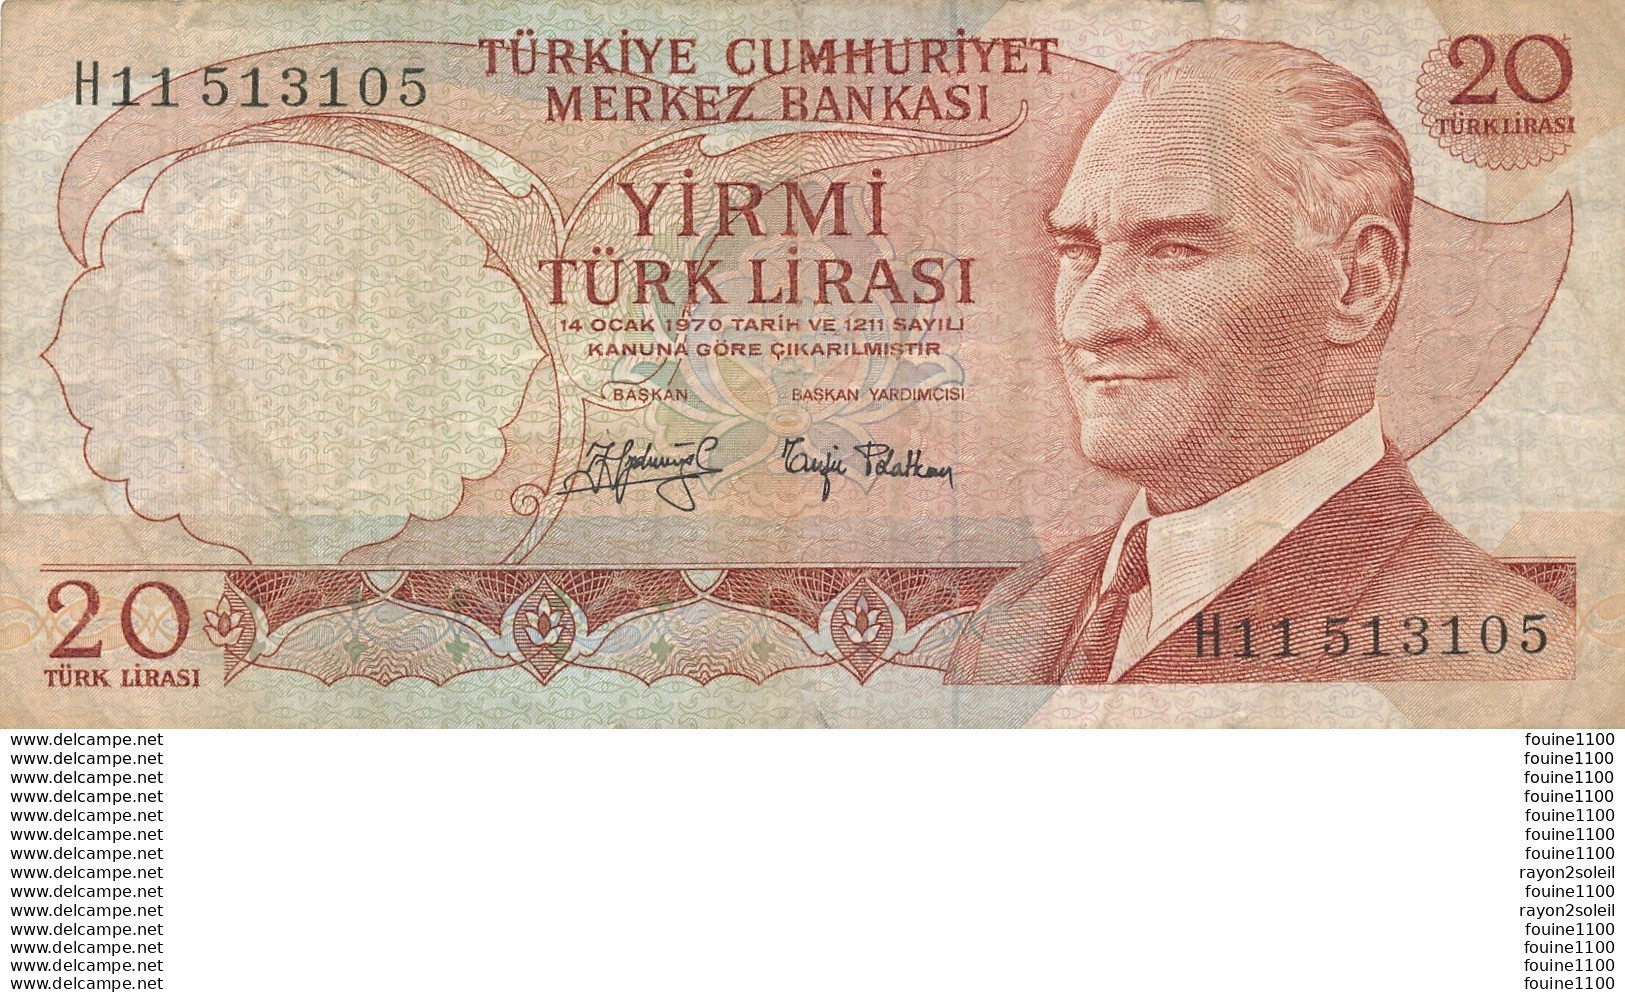 Billet  De Banque  TURQUIE 20 Turk Lirasi (1970) - Turquie